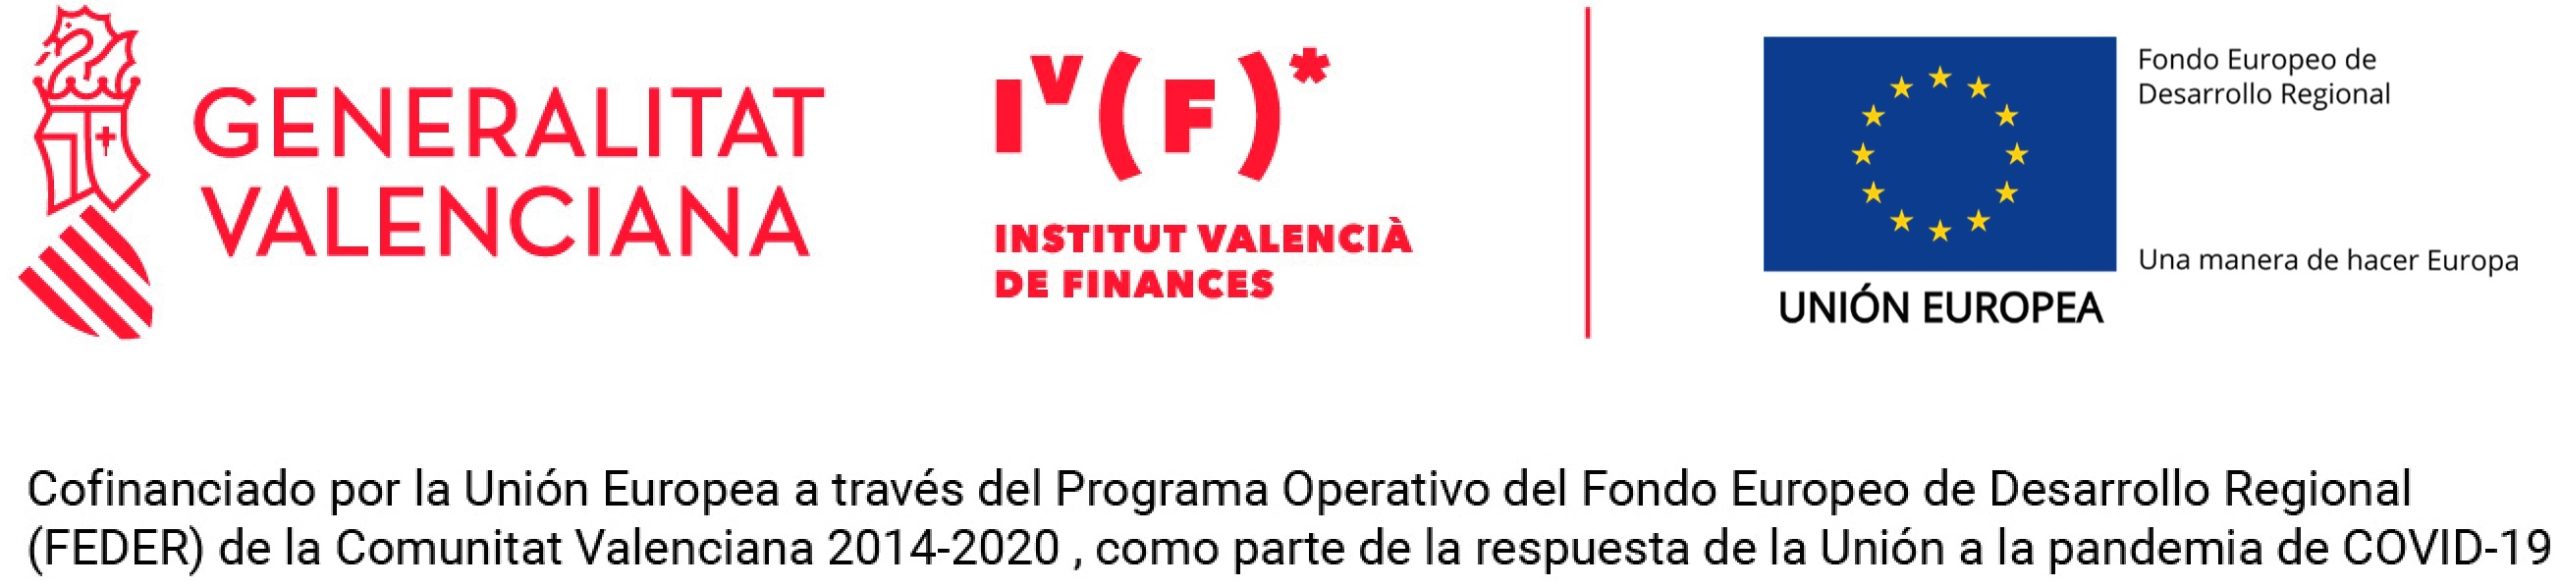 Préstamo cofinanciada por la Unión Europea a través del Programa Operativo del Fondo de Desarrollo Regional (FEDER) de la Comunitat Valenciana 2014-2020 